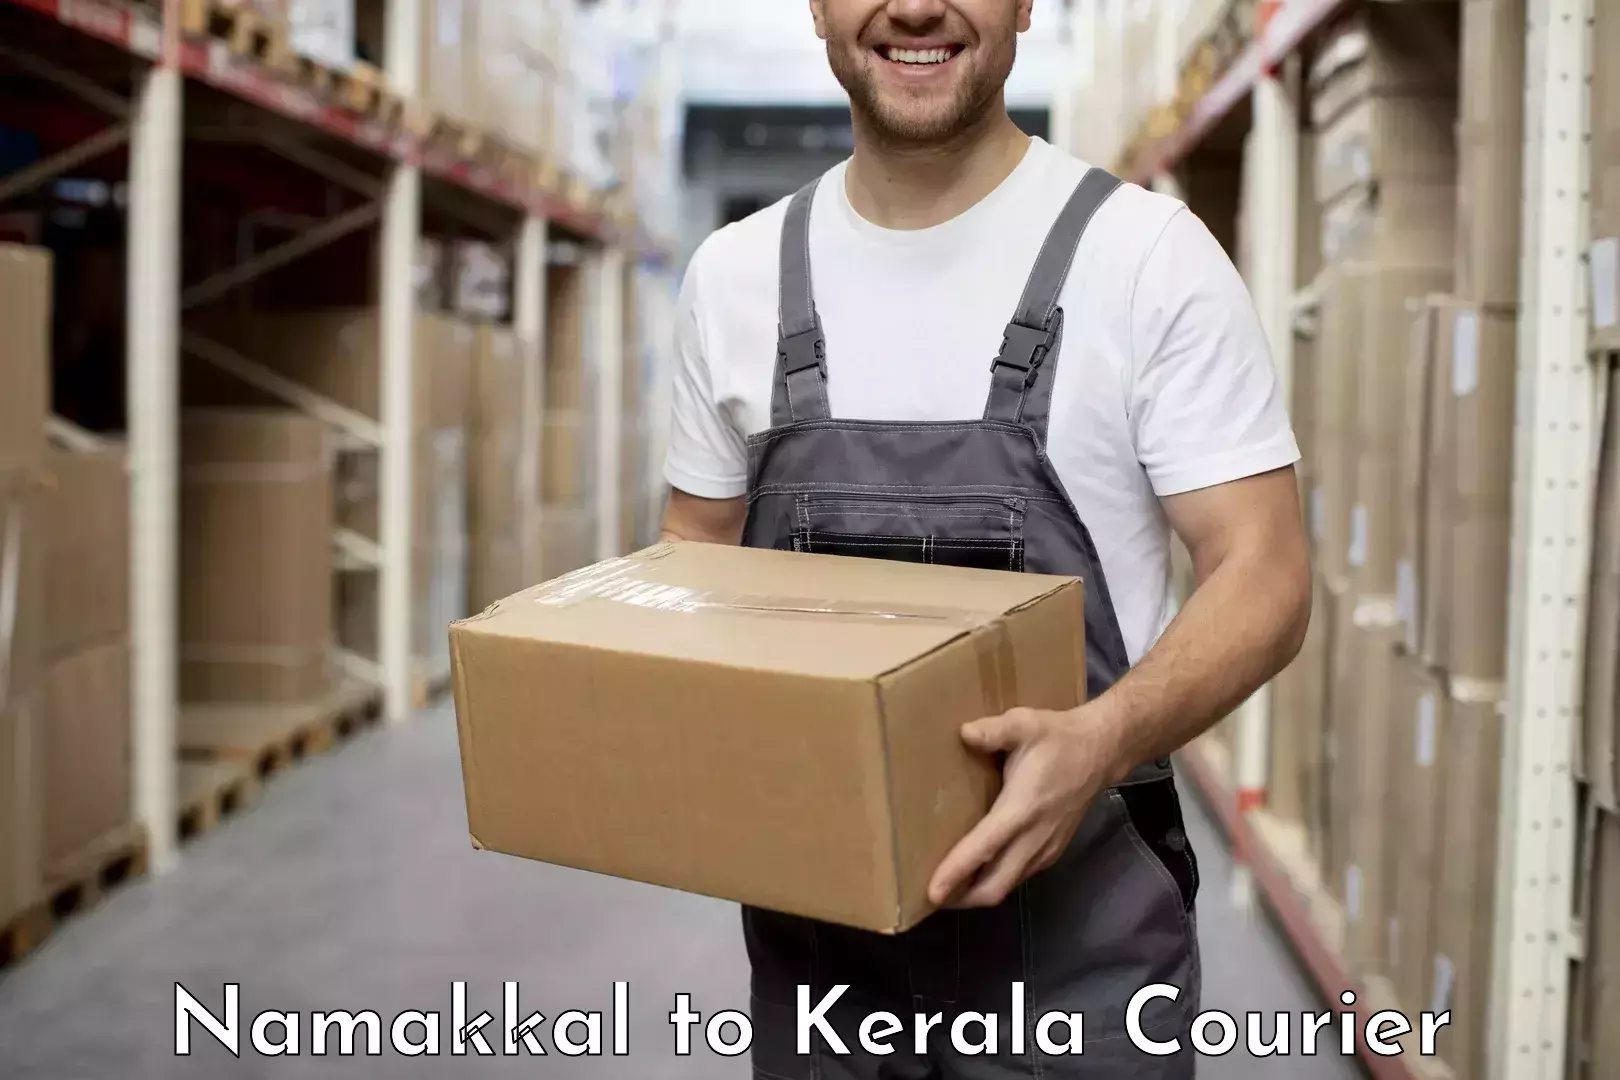 Customer-centric shipping Namakkal to Guruvayur